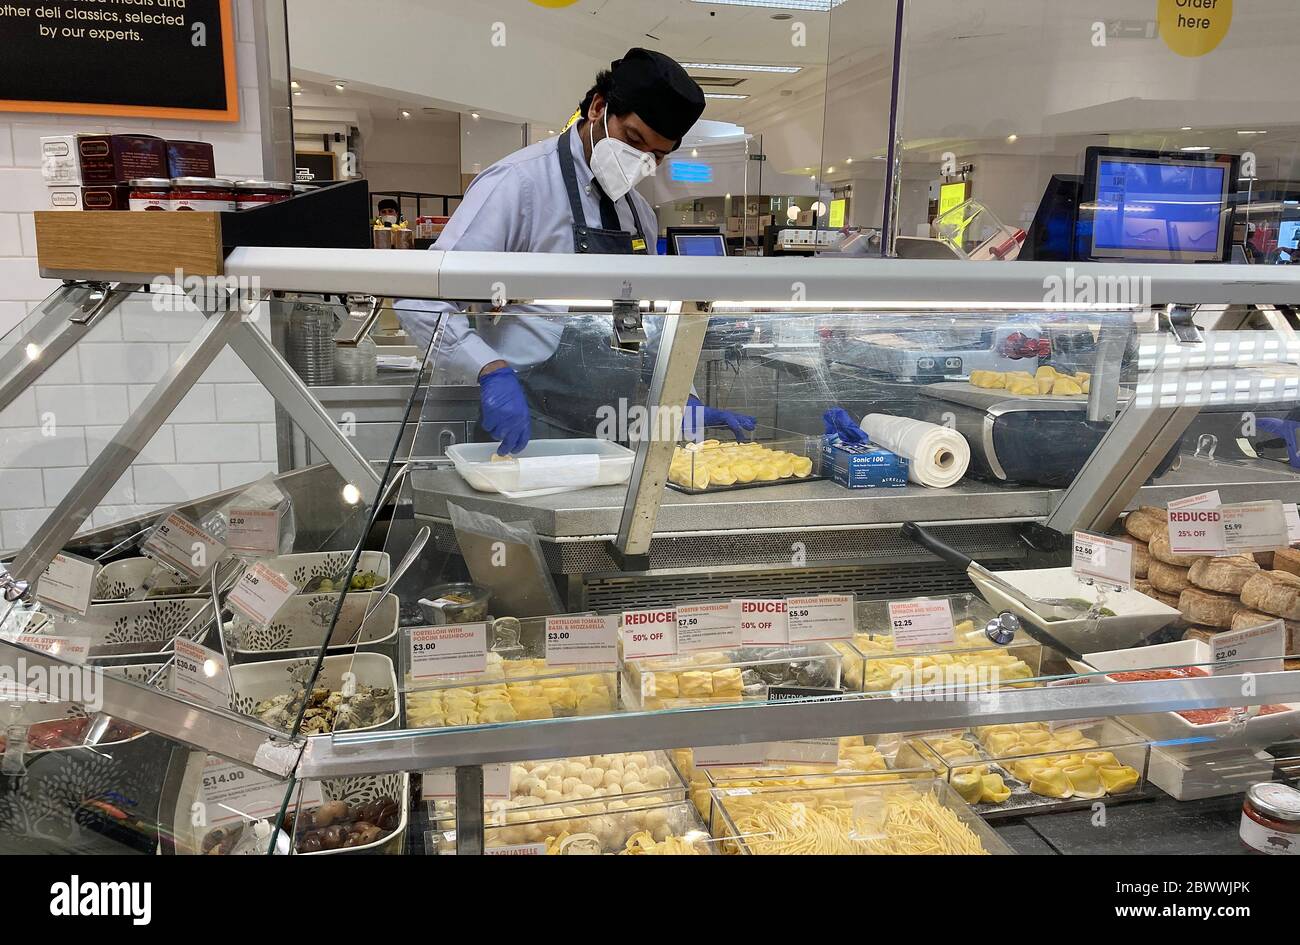 Ein Mitarbeiter arbeitet hinter einem Schutzschirm an der Käsetheke in der Lebensmittelhalle in Selfridges, London, nachdem Maßnahmen eingeführt wurden, um England aus der Sperre zu holen. Stockfoto